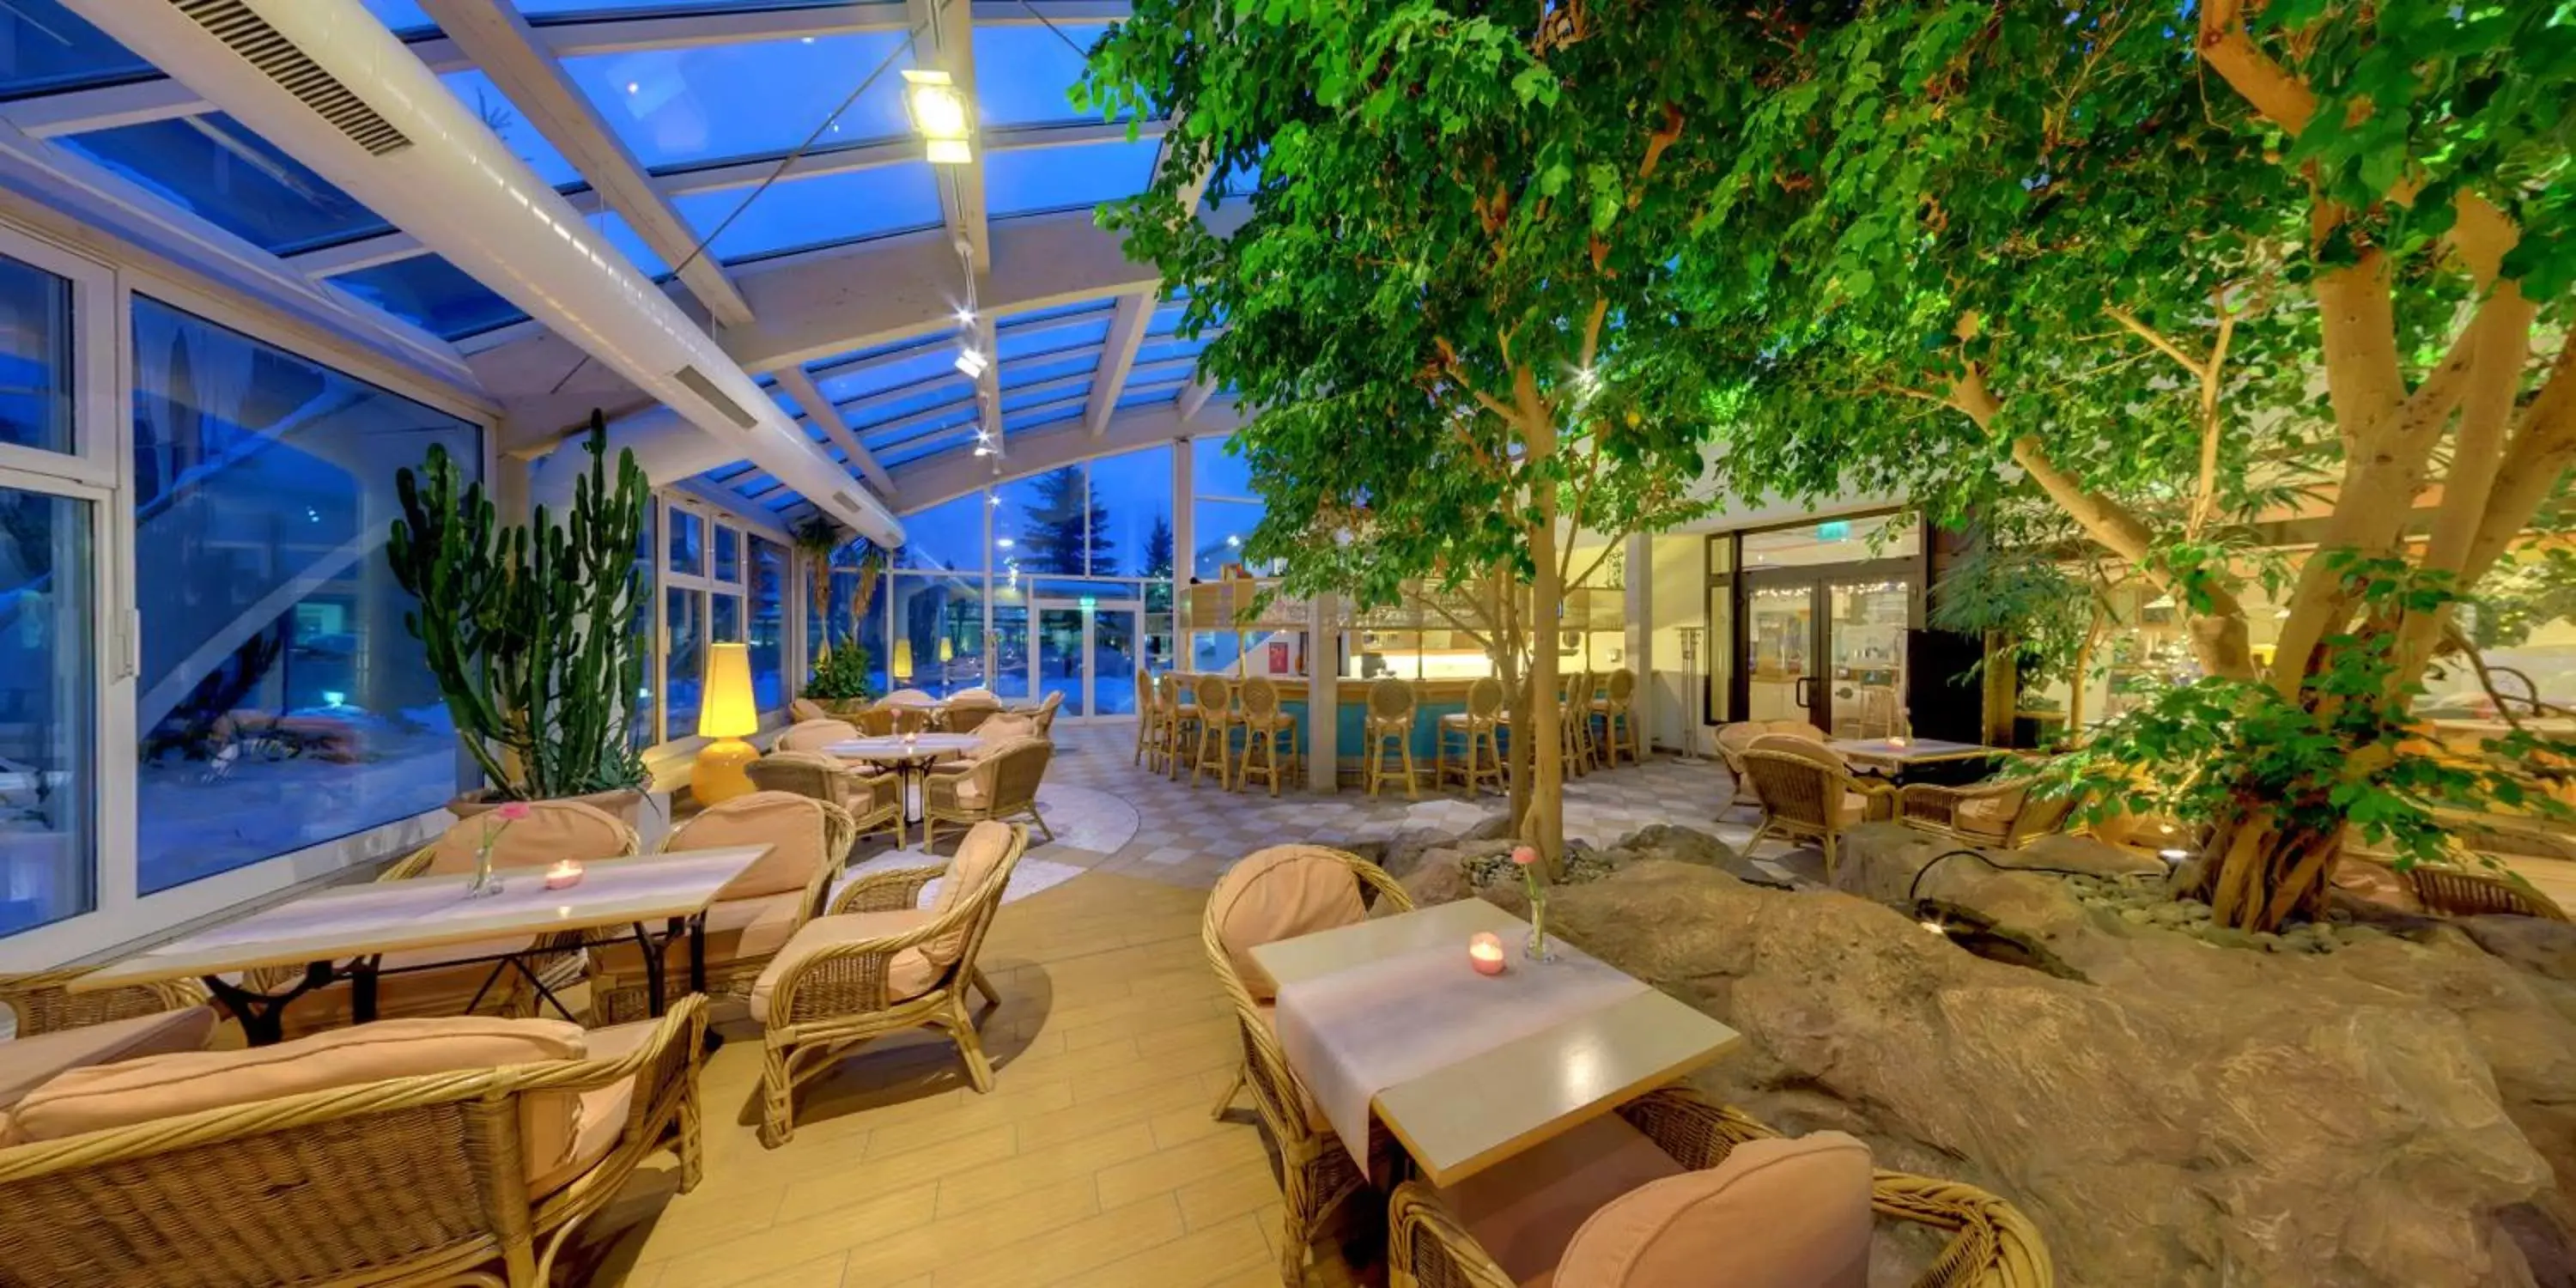 Lounge or bar, Restaurant/Places to Eat in IFA Schöneck Hotel & Ferienpark